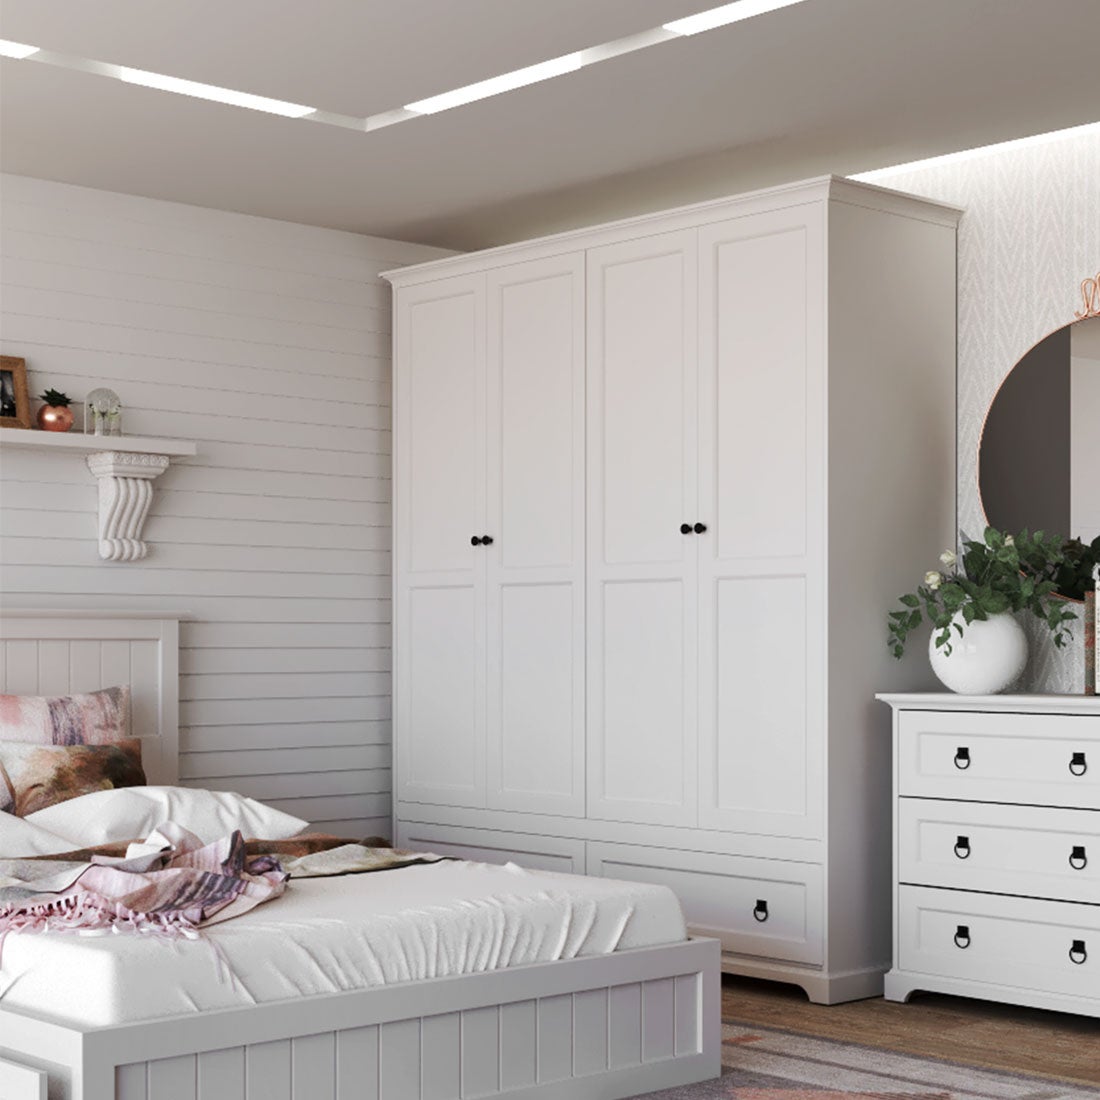 ชุดห้องนอน ตู้เสื้อผ้าบานเปิด รุ่น Melona สีสีขาว-SB Design Square